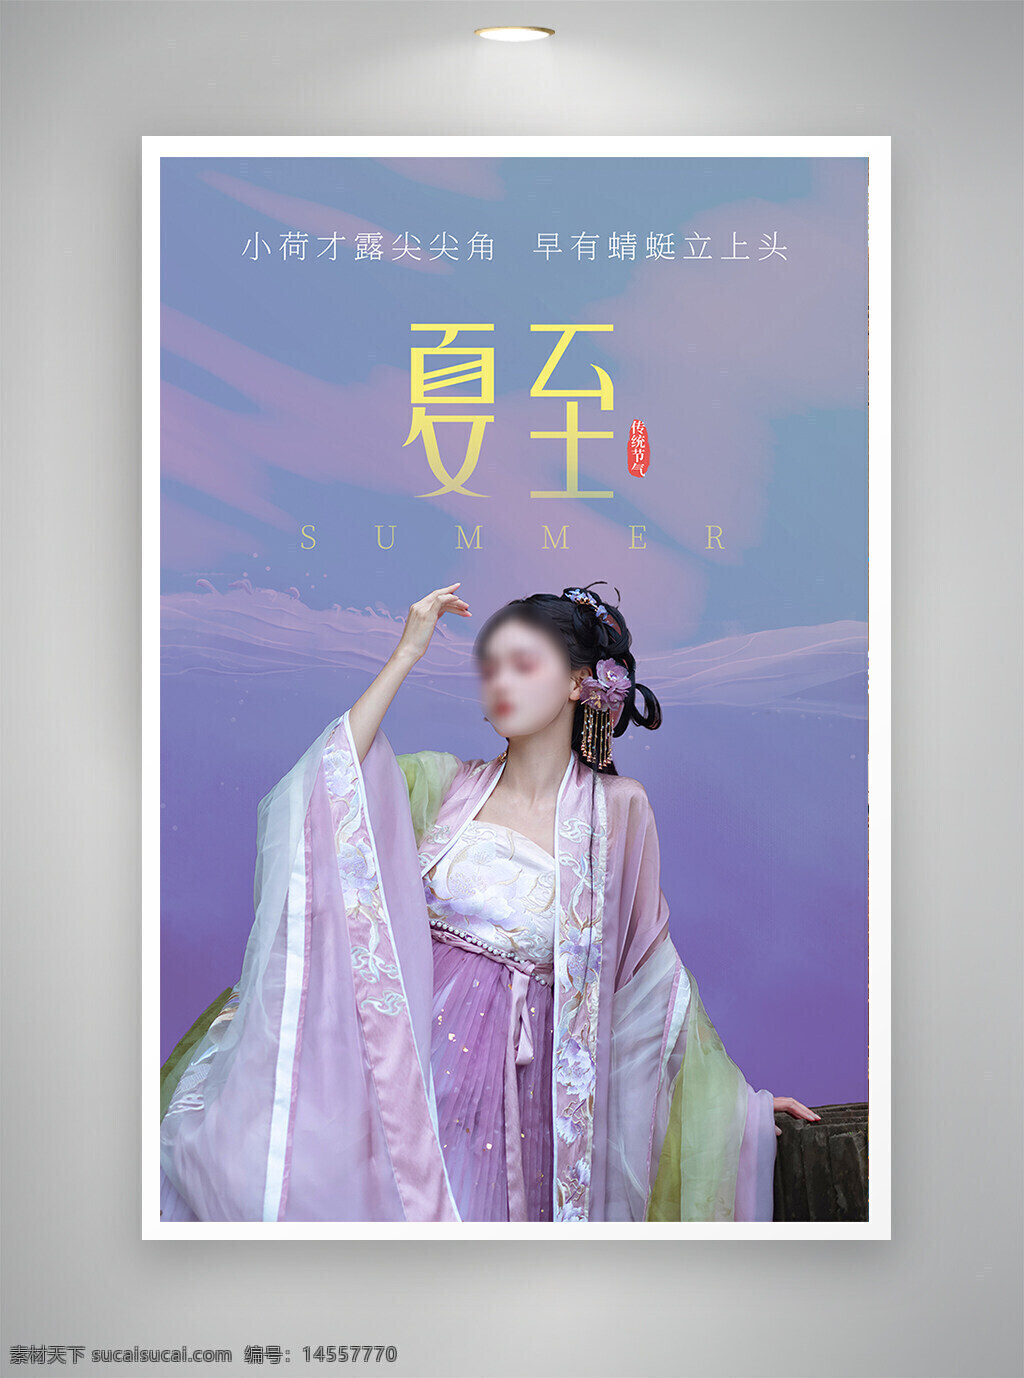 中国风海报 古风海报 促销海报 节日海报 夏至海报